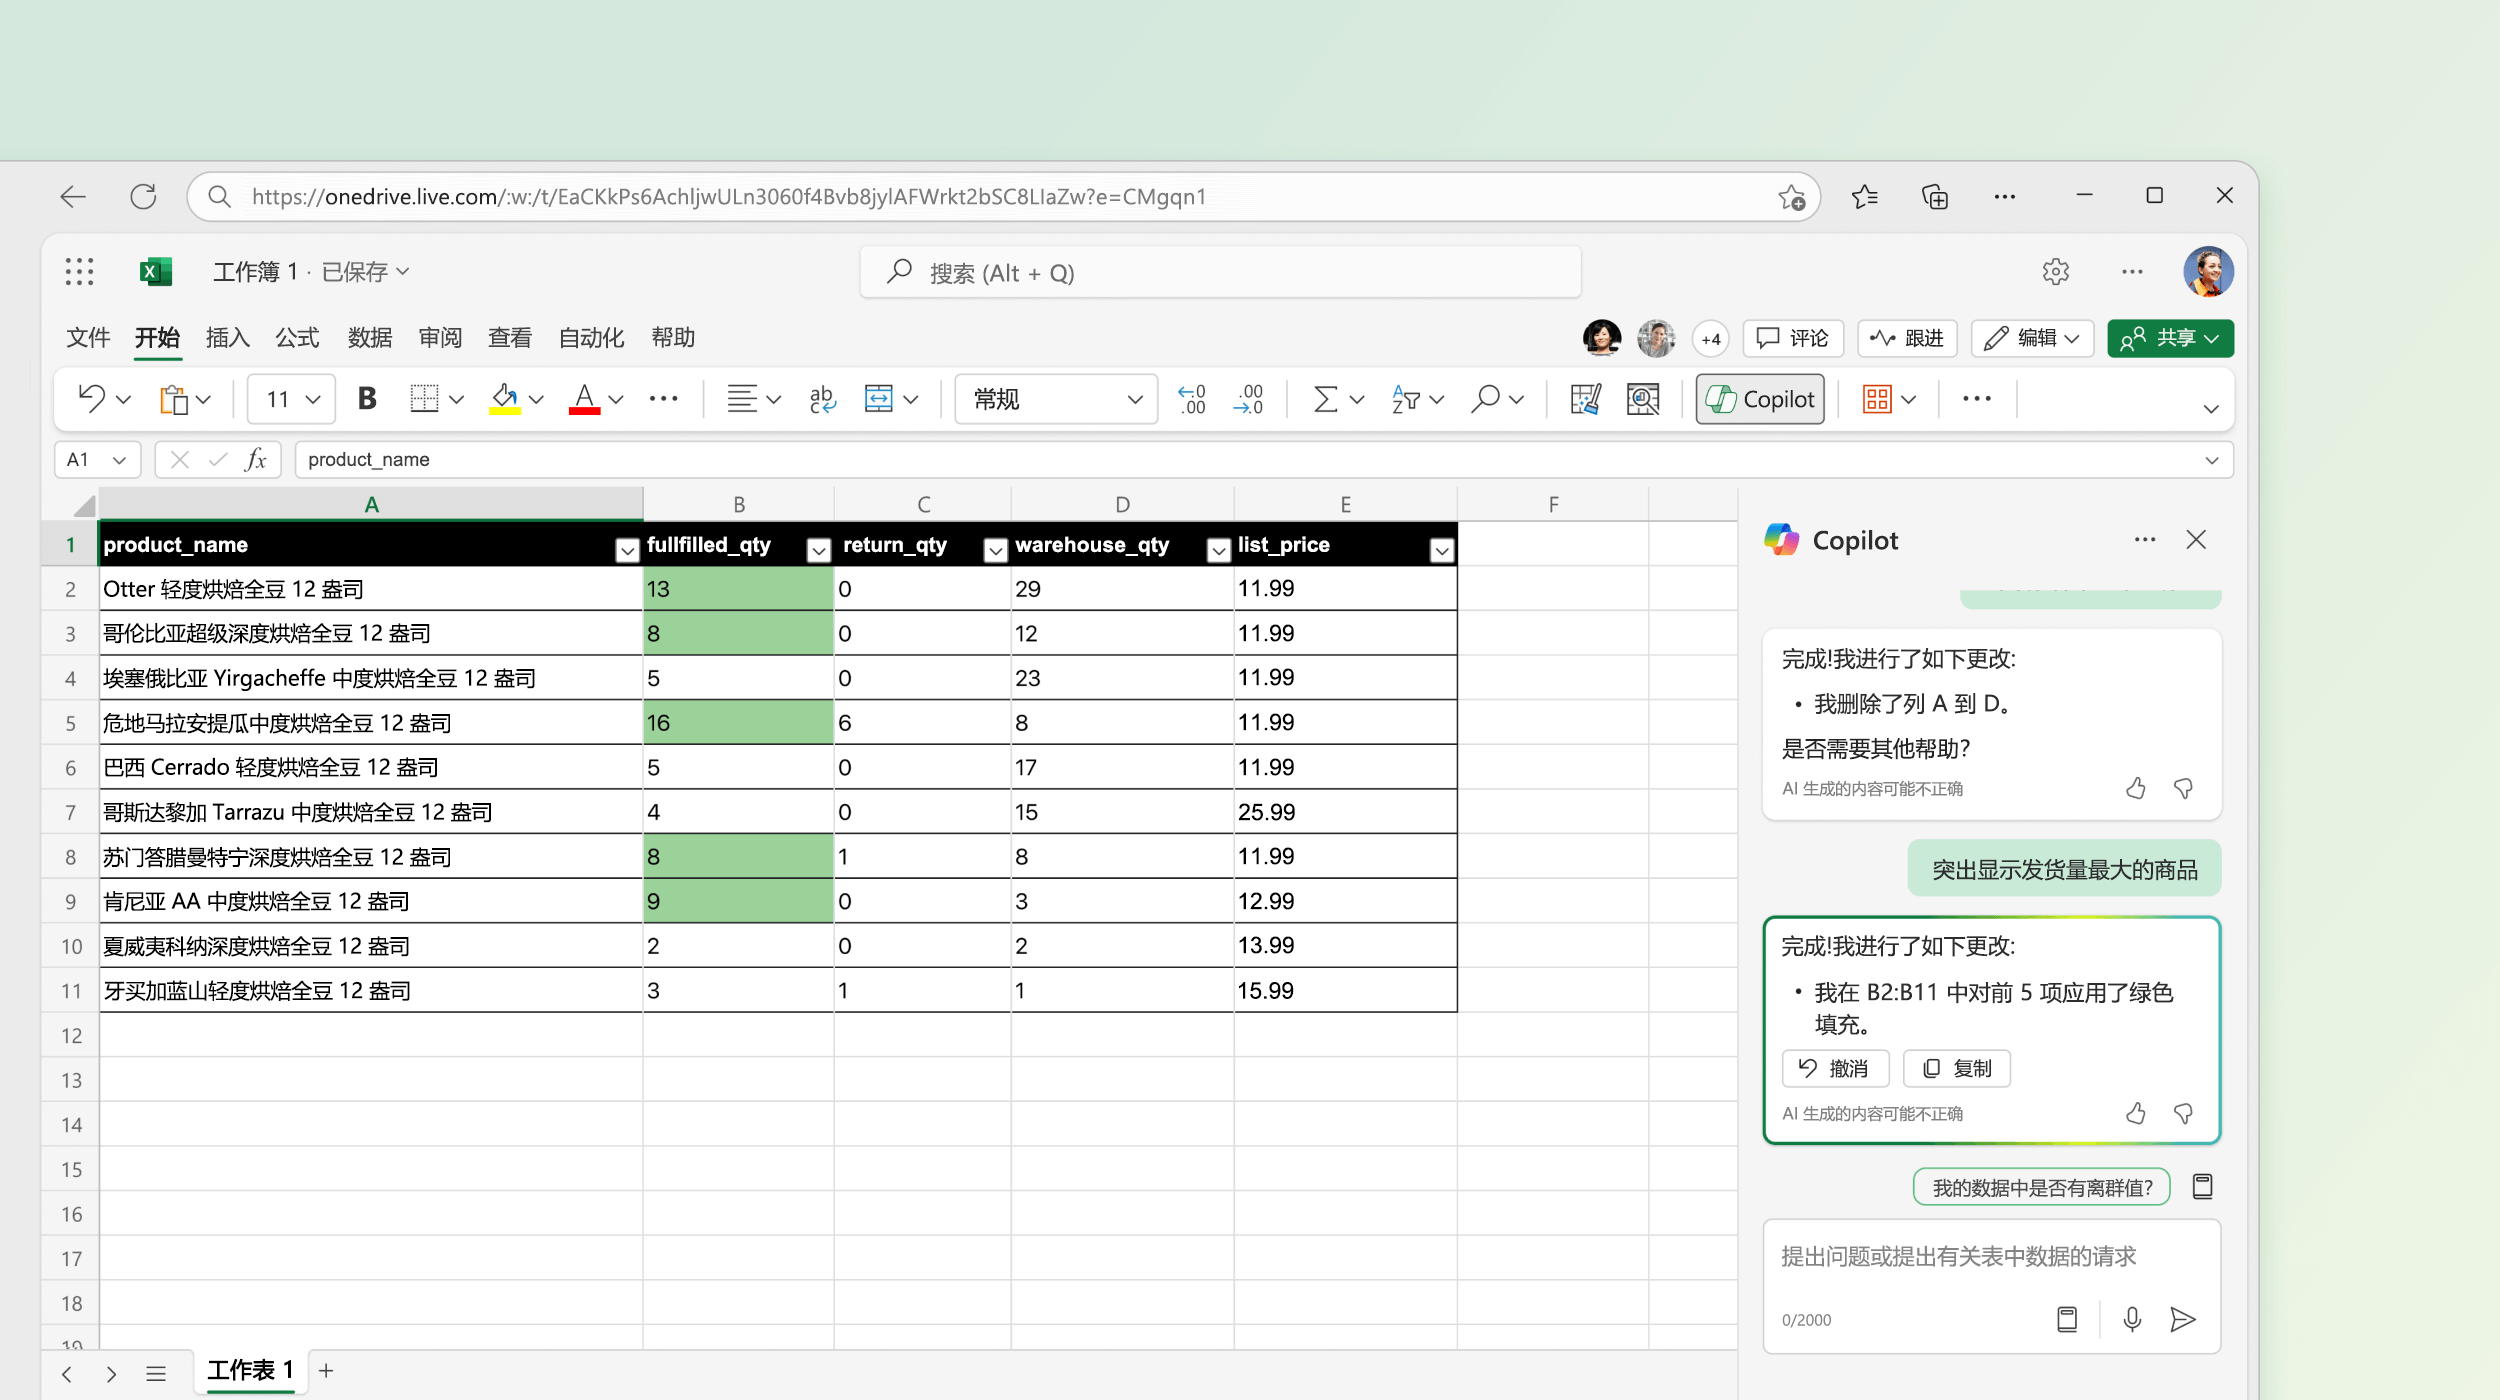 屏幕截图显示 Excel 中的 Copilot 对现有数据进行更改。